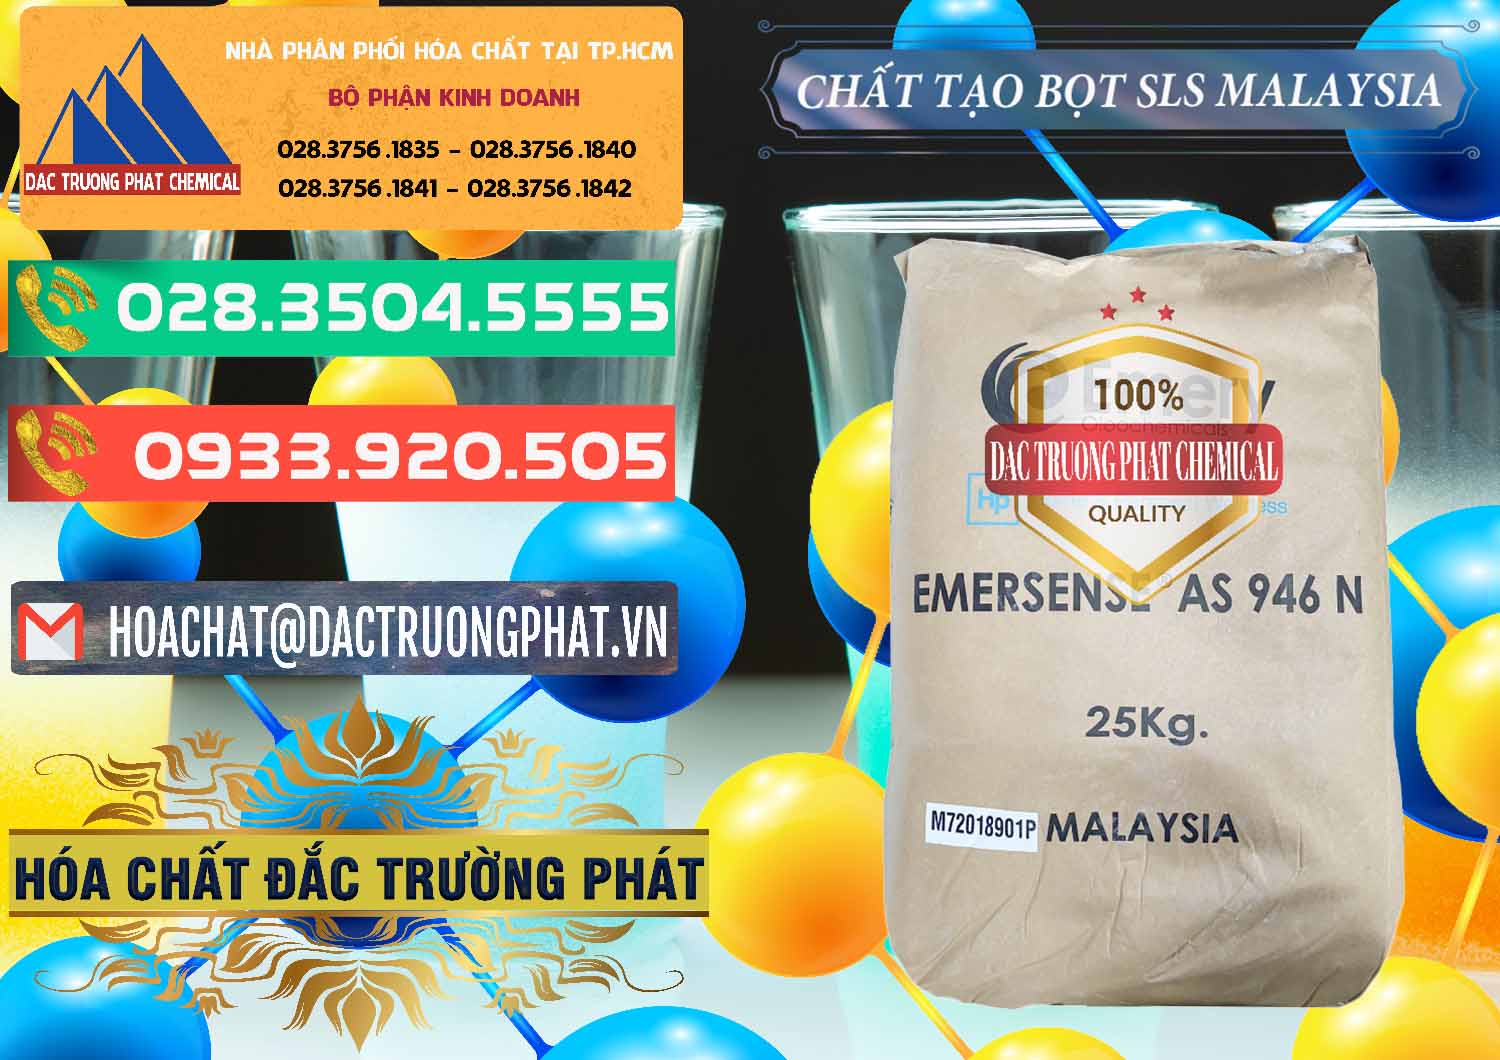 Nơi chuyên bán & cung ứng Chất Tạo Bọt SLS Emery - Emersense AS 946N Mã Lai Malaysia - 0423 - Phân phối ( cung cấp ) hóa chất tại TP.HCM - congtyhoachat.com.vn